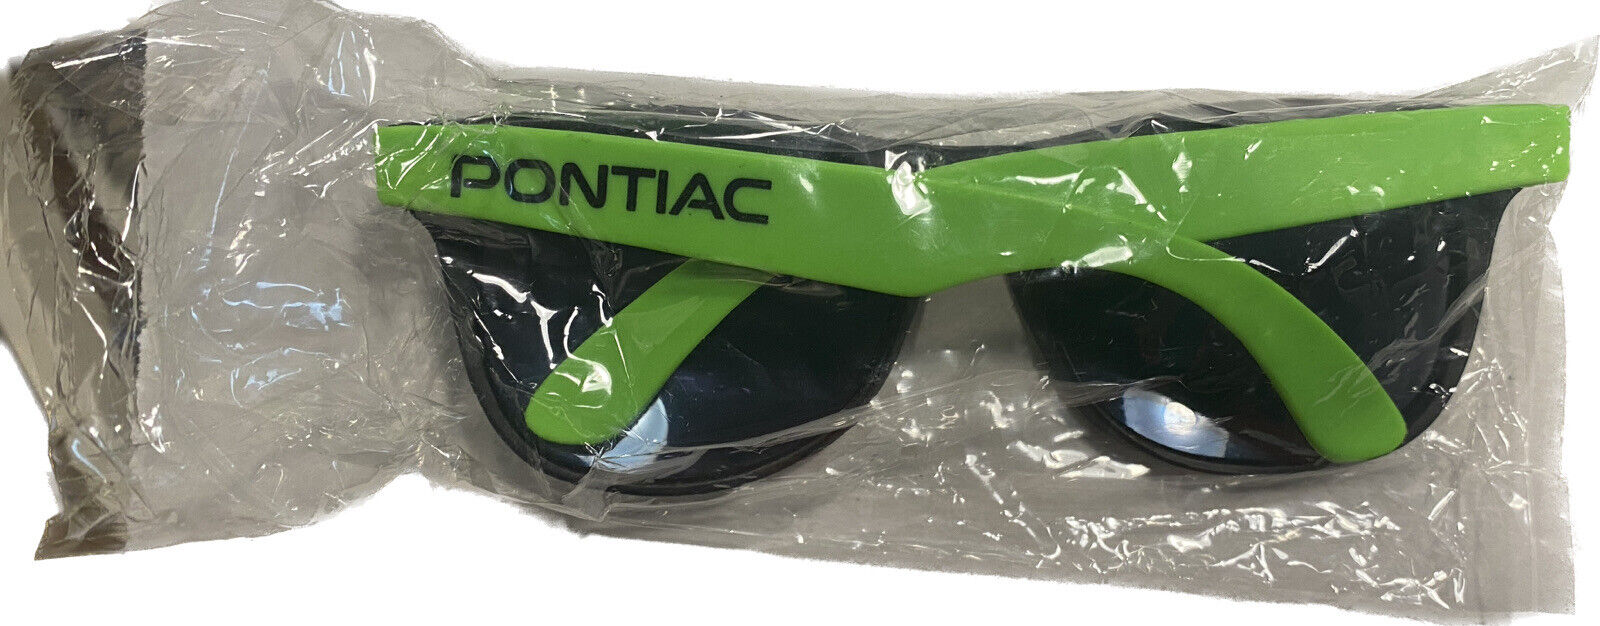 Pontiac UV Sunglasses Neon Green, New Sealed, VTG 1990’s Deadstock